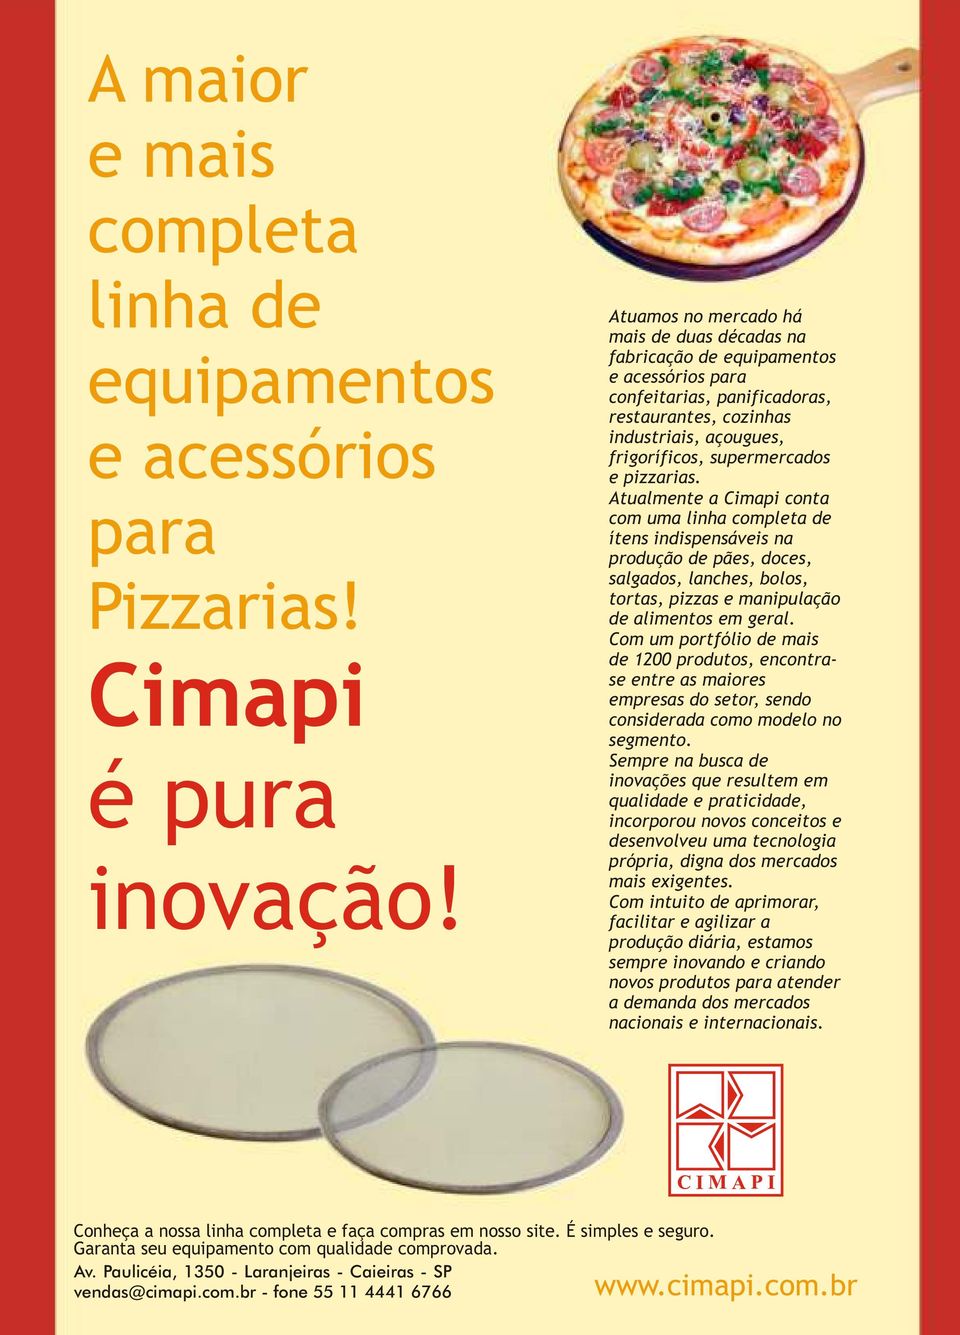 pizzarias. Atualmente a Cimapi conta com uma linha completa de ítens indispensáveis na produção de pães, doces, salgados, lanches, bolos, tortas, pizzas e manipulação de alimentos em geral.